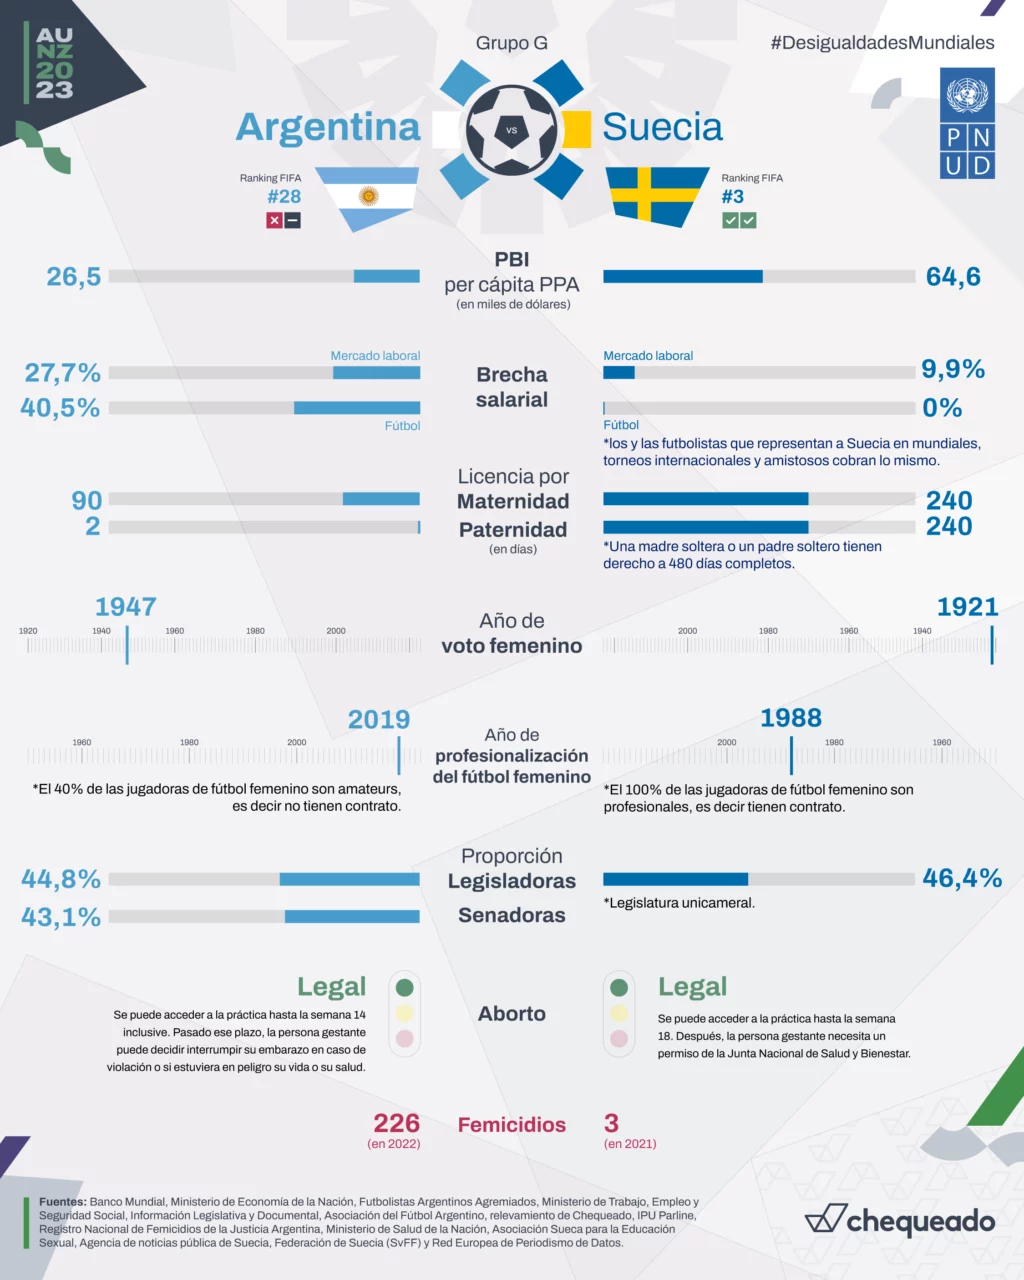 Argentina vs. Suecia en el Mundial de Fútbol femenino: ¿cómo les va a ambos países en política, economía y género?